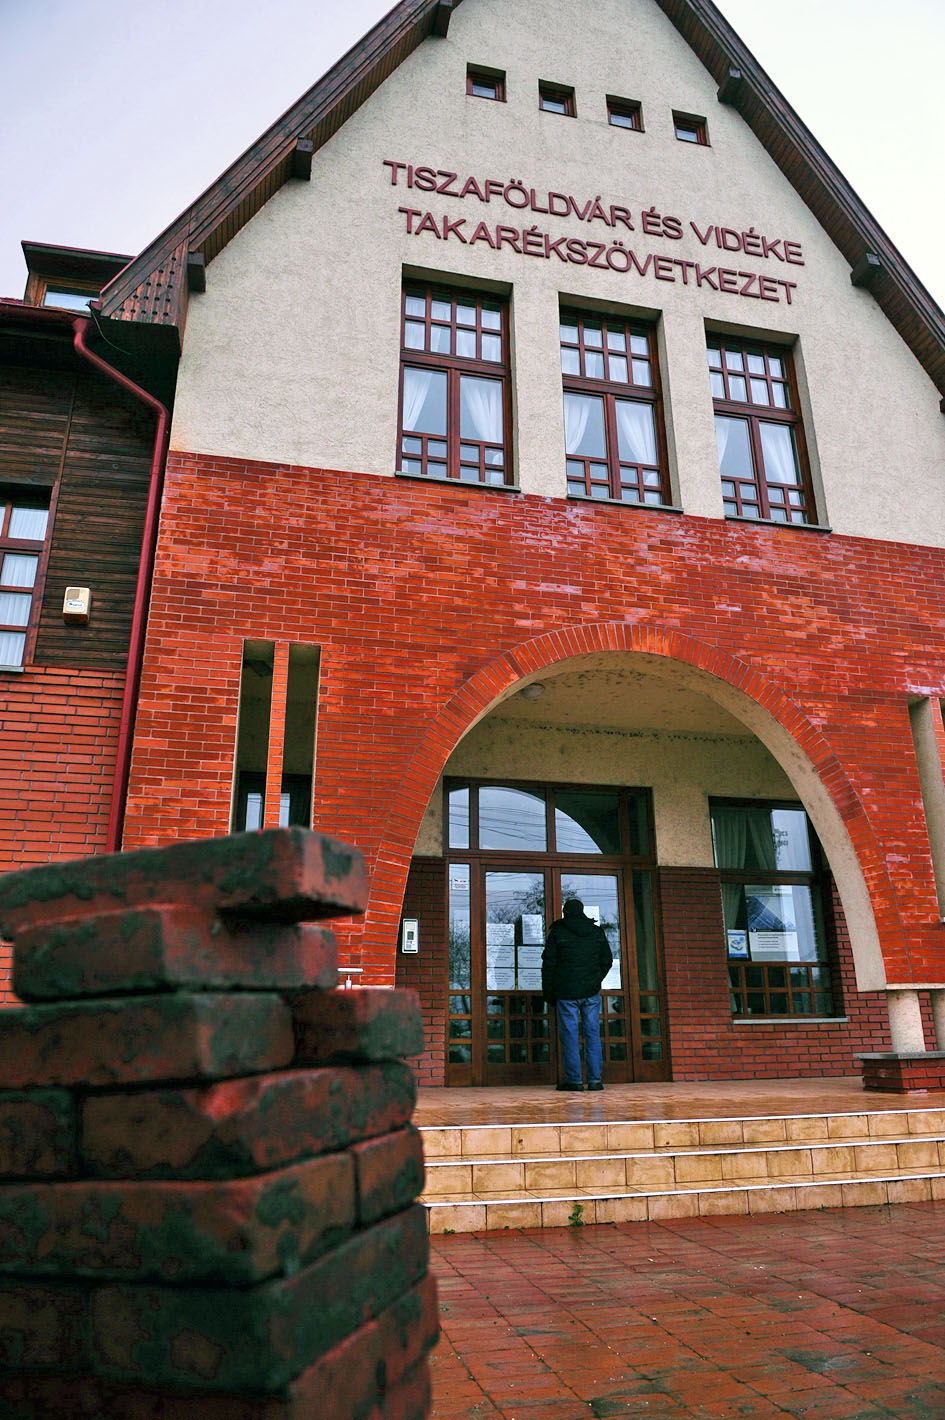 Karácsony előtt bezárták a tiszaföldvári takarékszövetkezetet. Senkit nem értesítettek, hogy nem férhet majd hozzá a pénzéhez